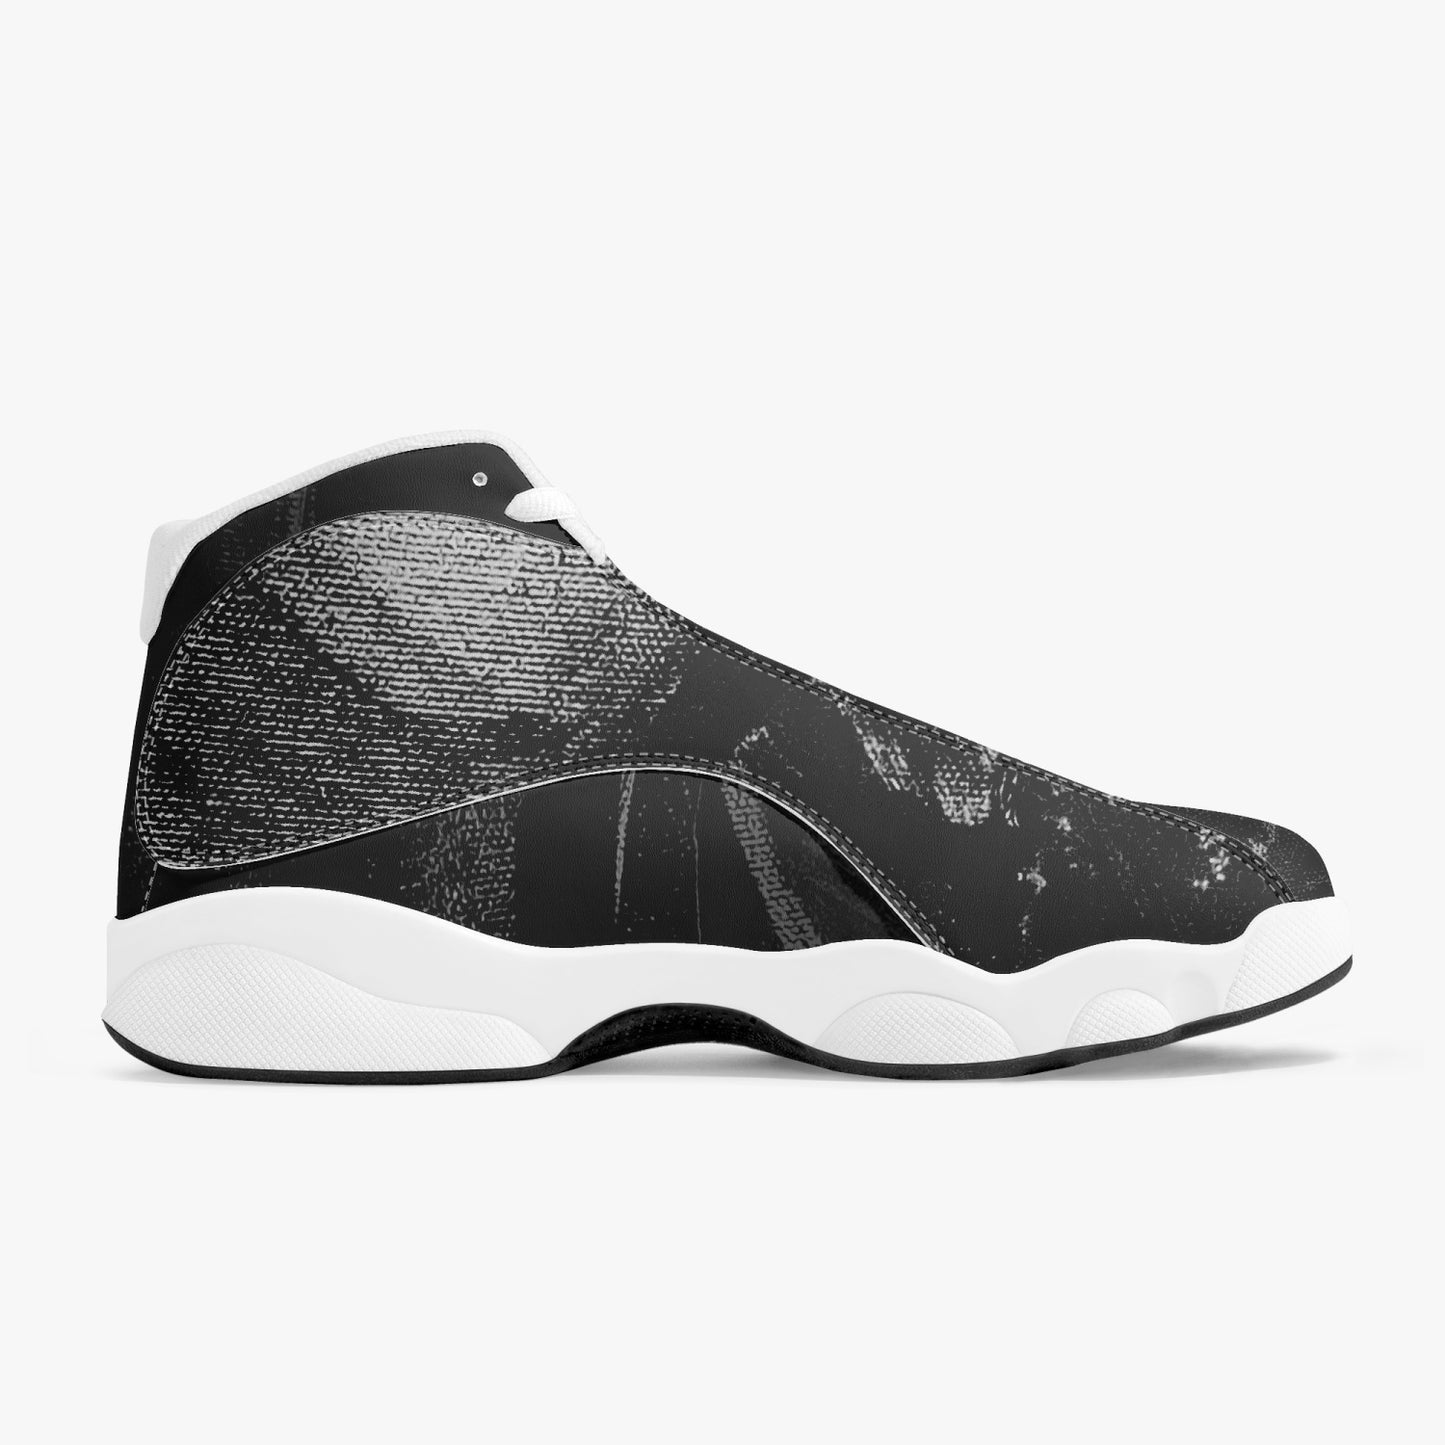 高端皮革篮球运动鞋“Wak'grey”“